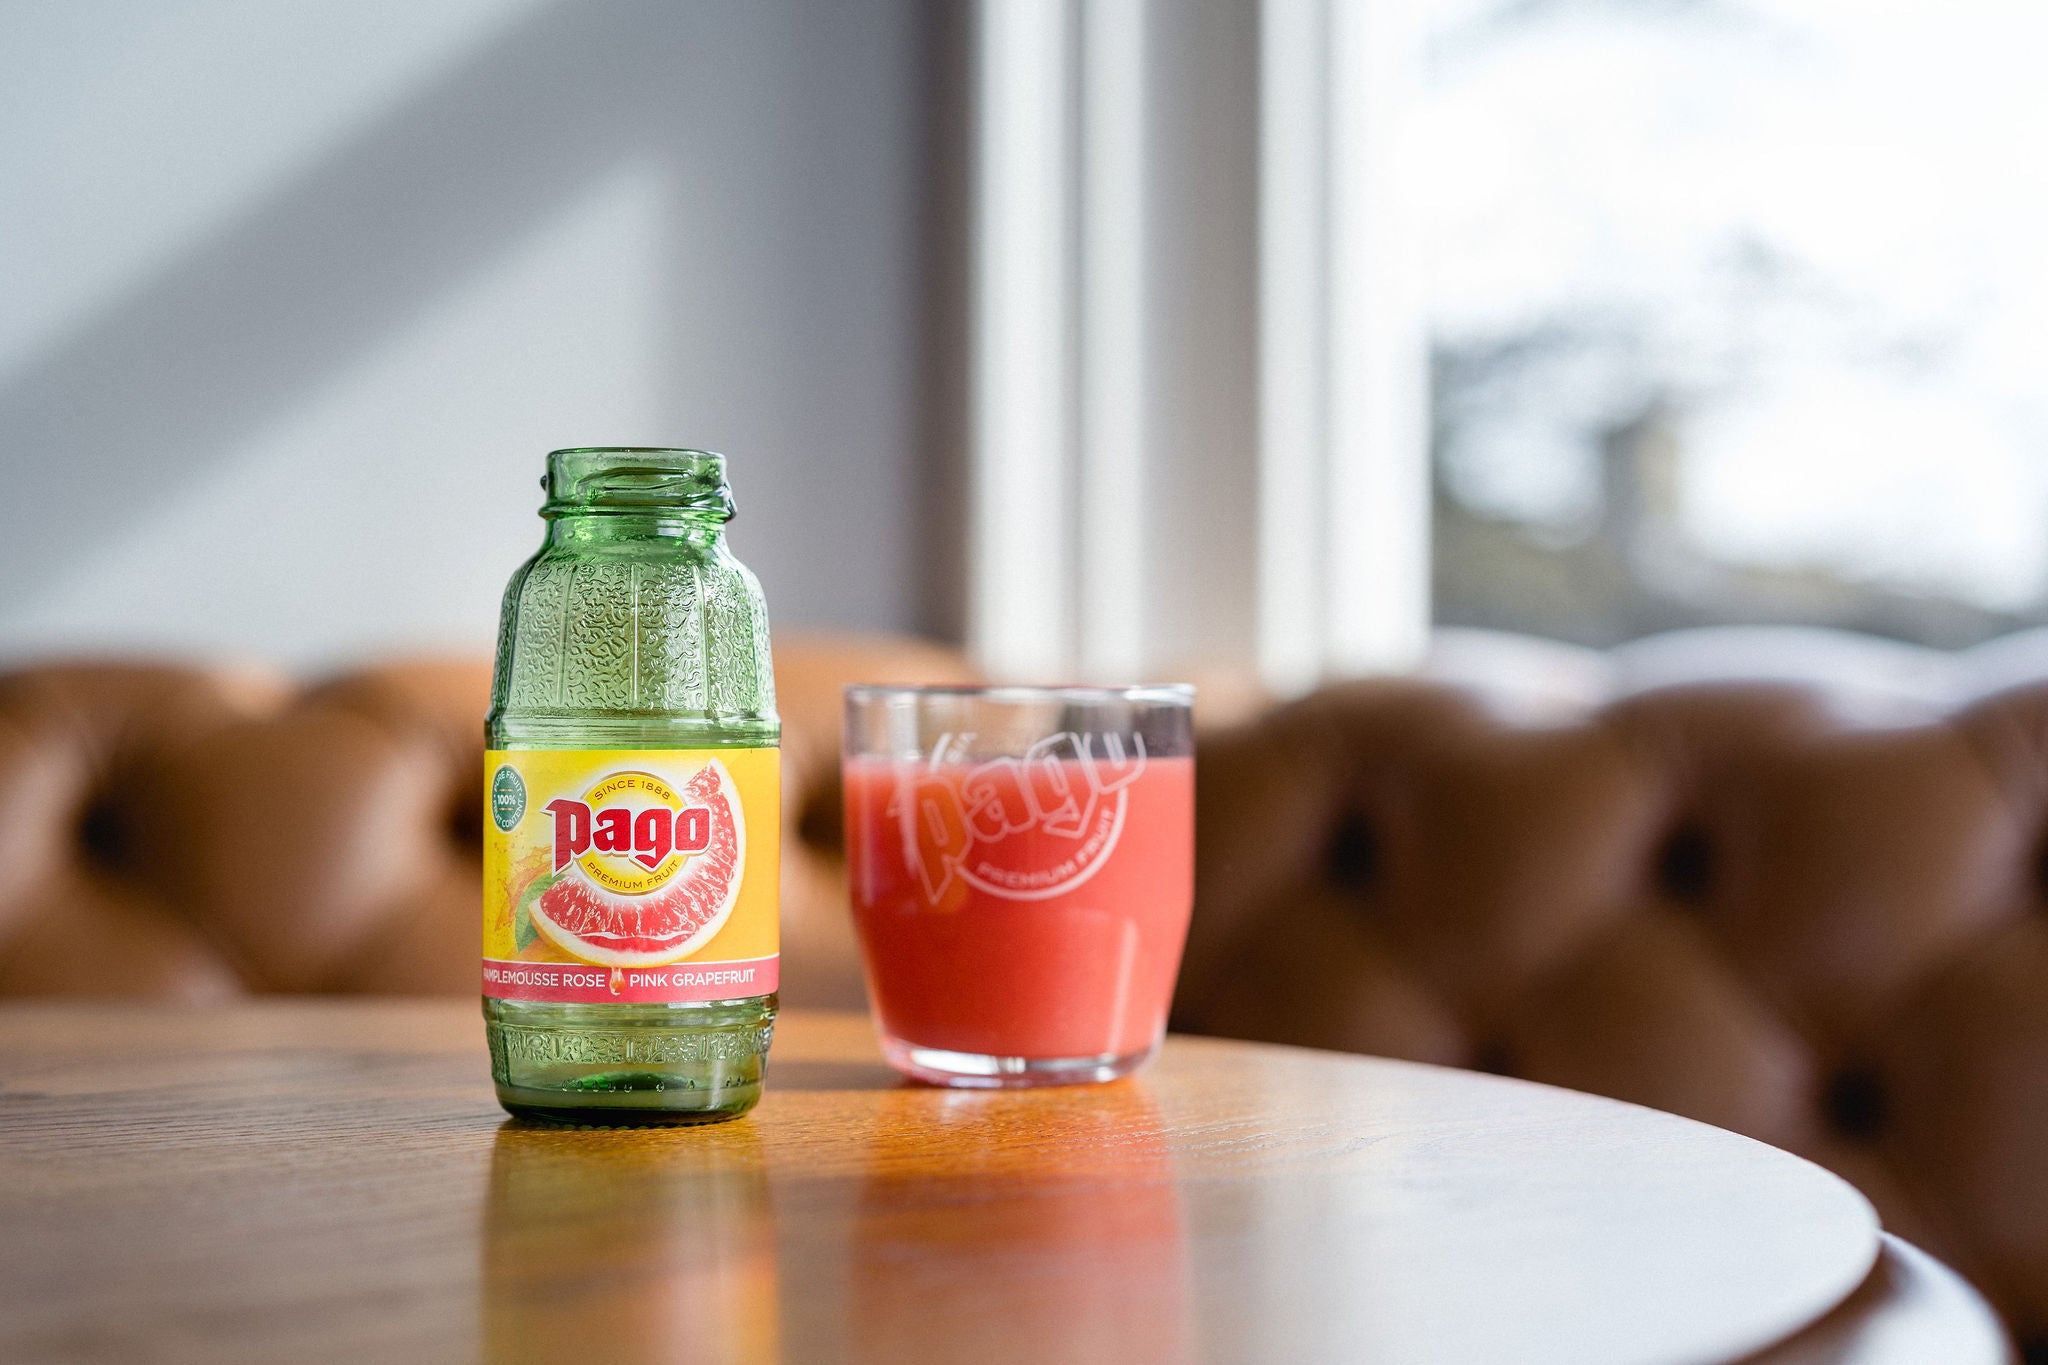 Pago Pink Grapefruit Juice (12x200ml) - Pago Premium Fruit Juice Store